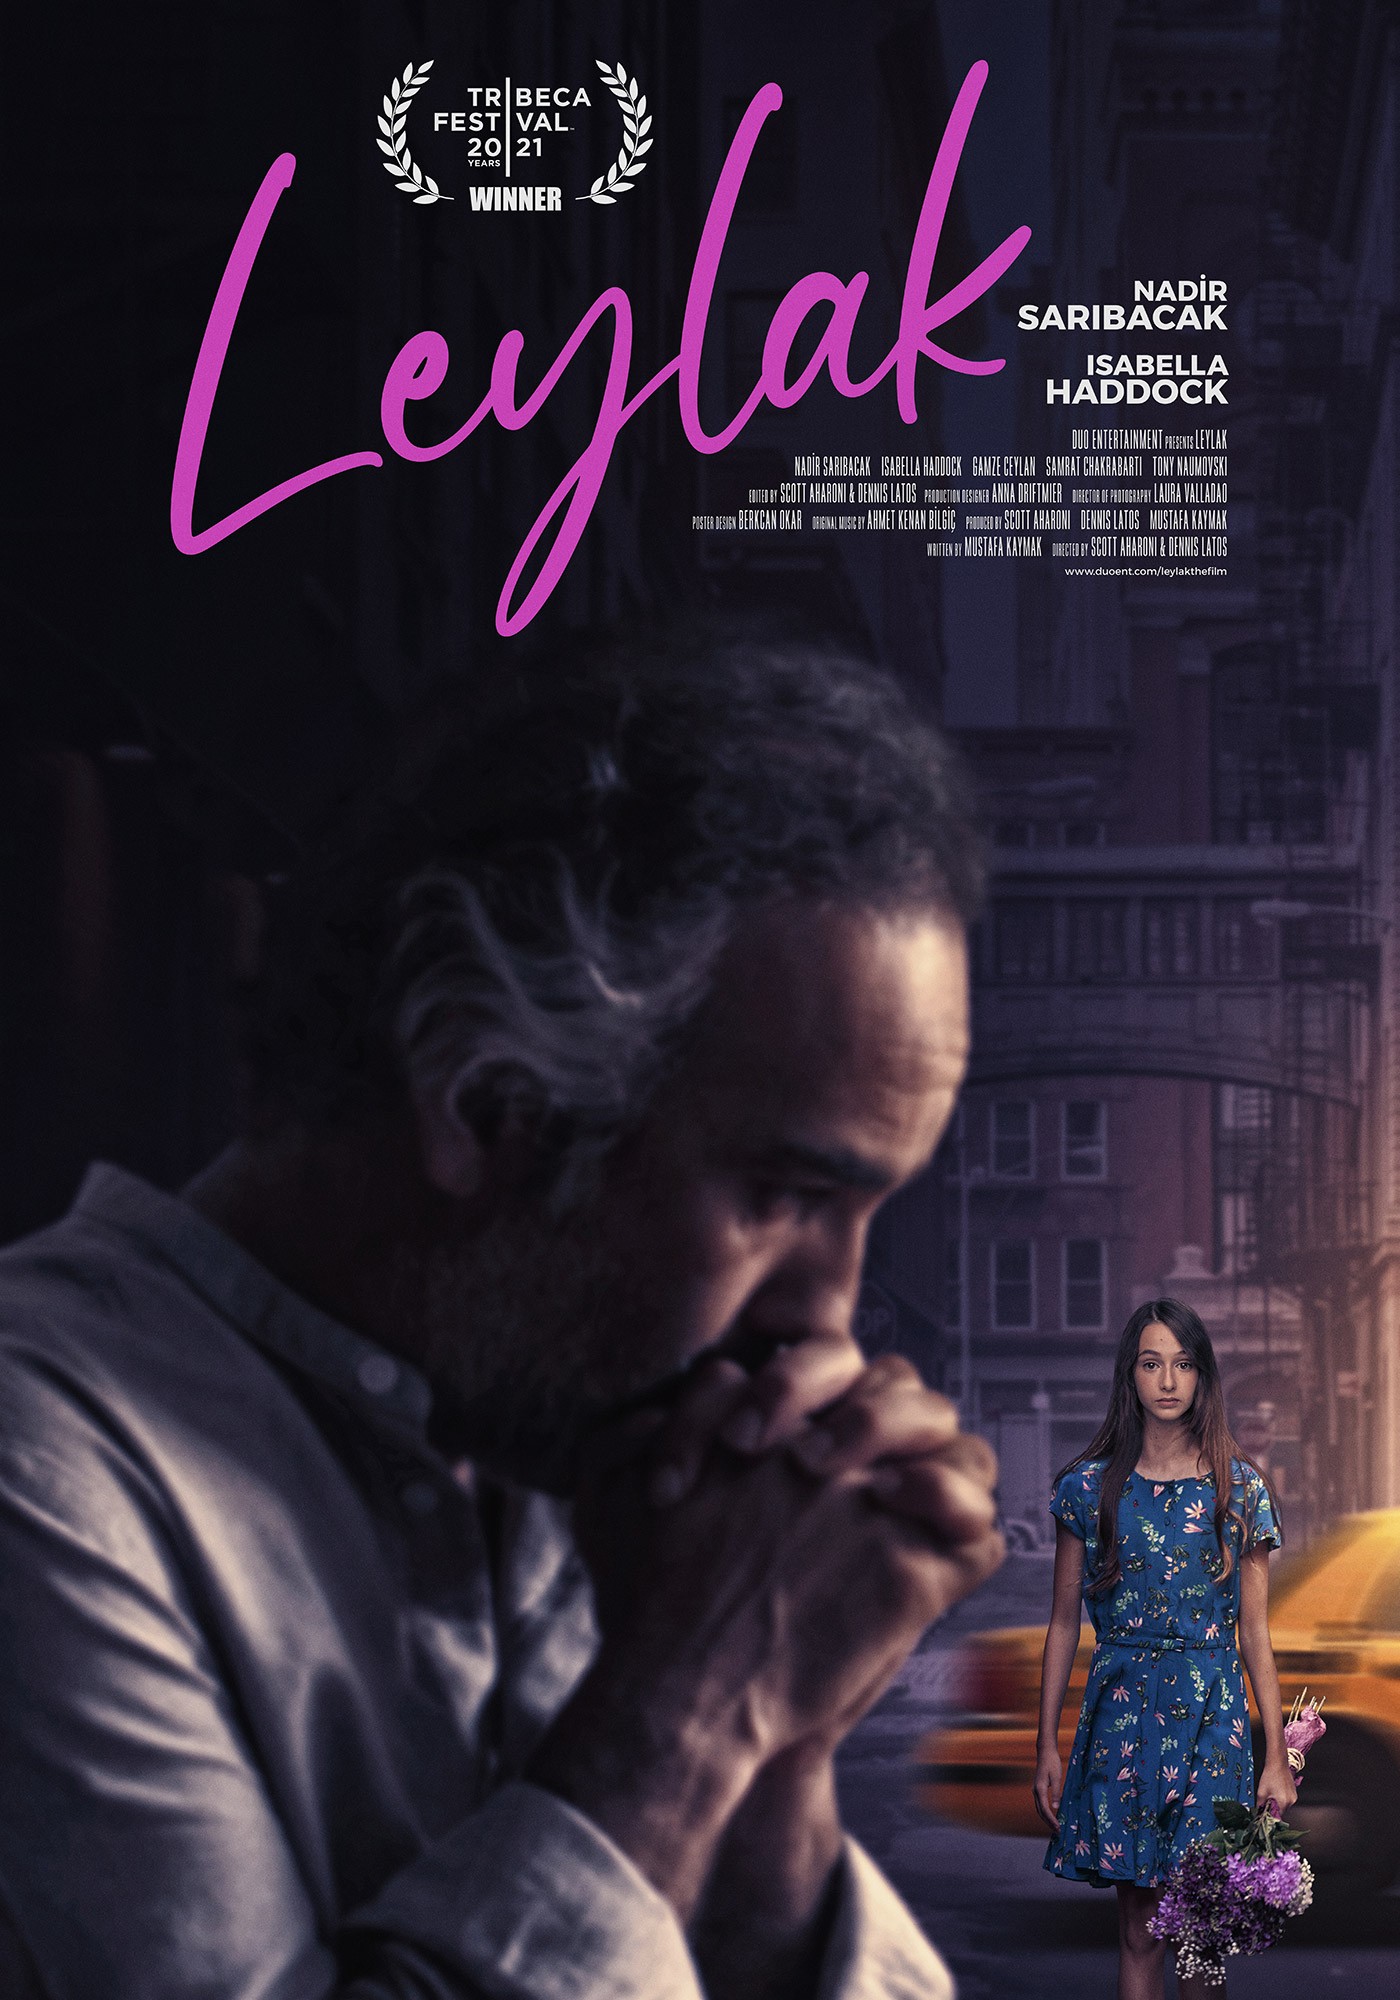 Mega Sized Movie Poster Image for Leylak